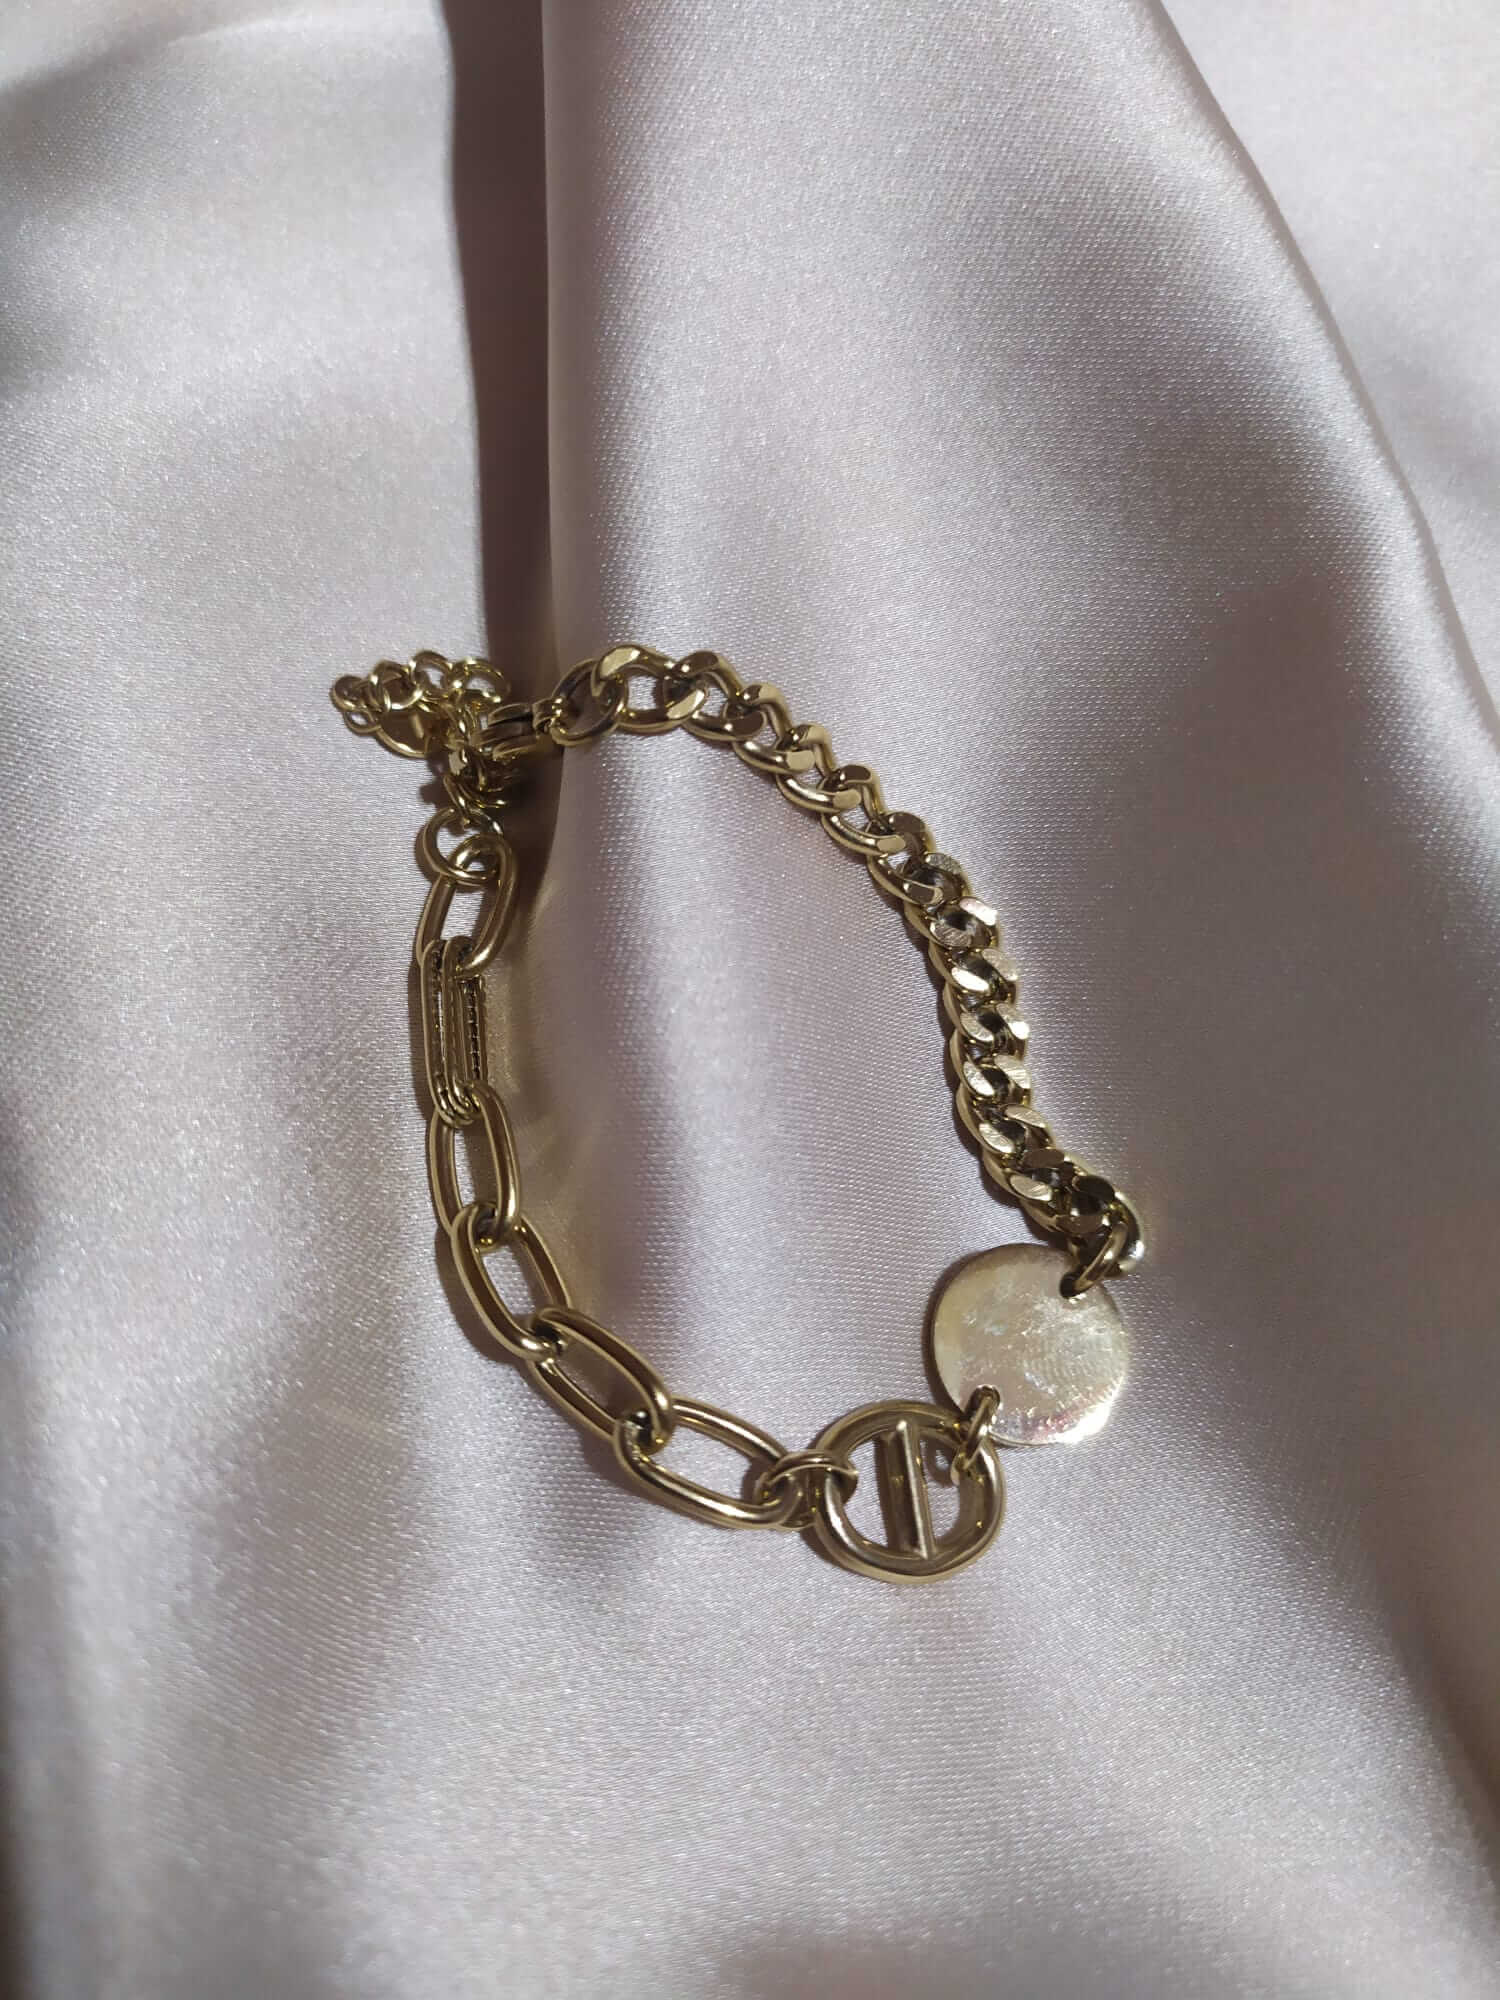 Pulseira em aço dourada com conjugação de dois fios diferentes e pendente circular